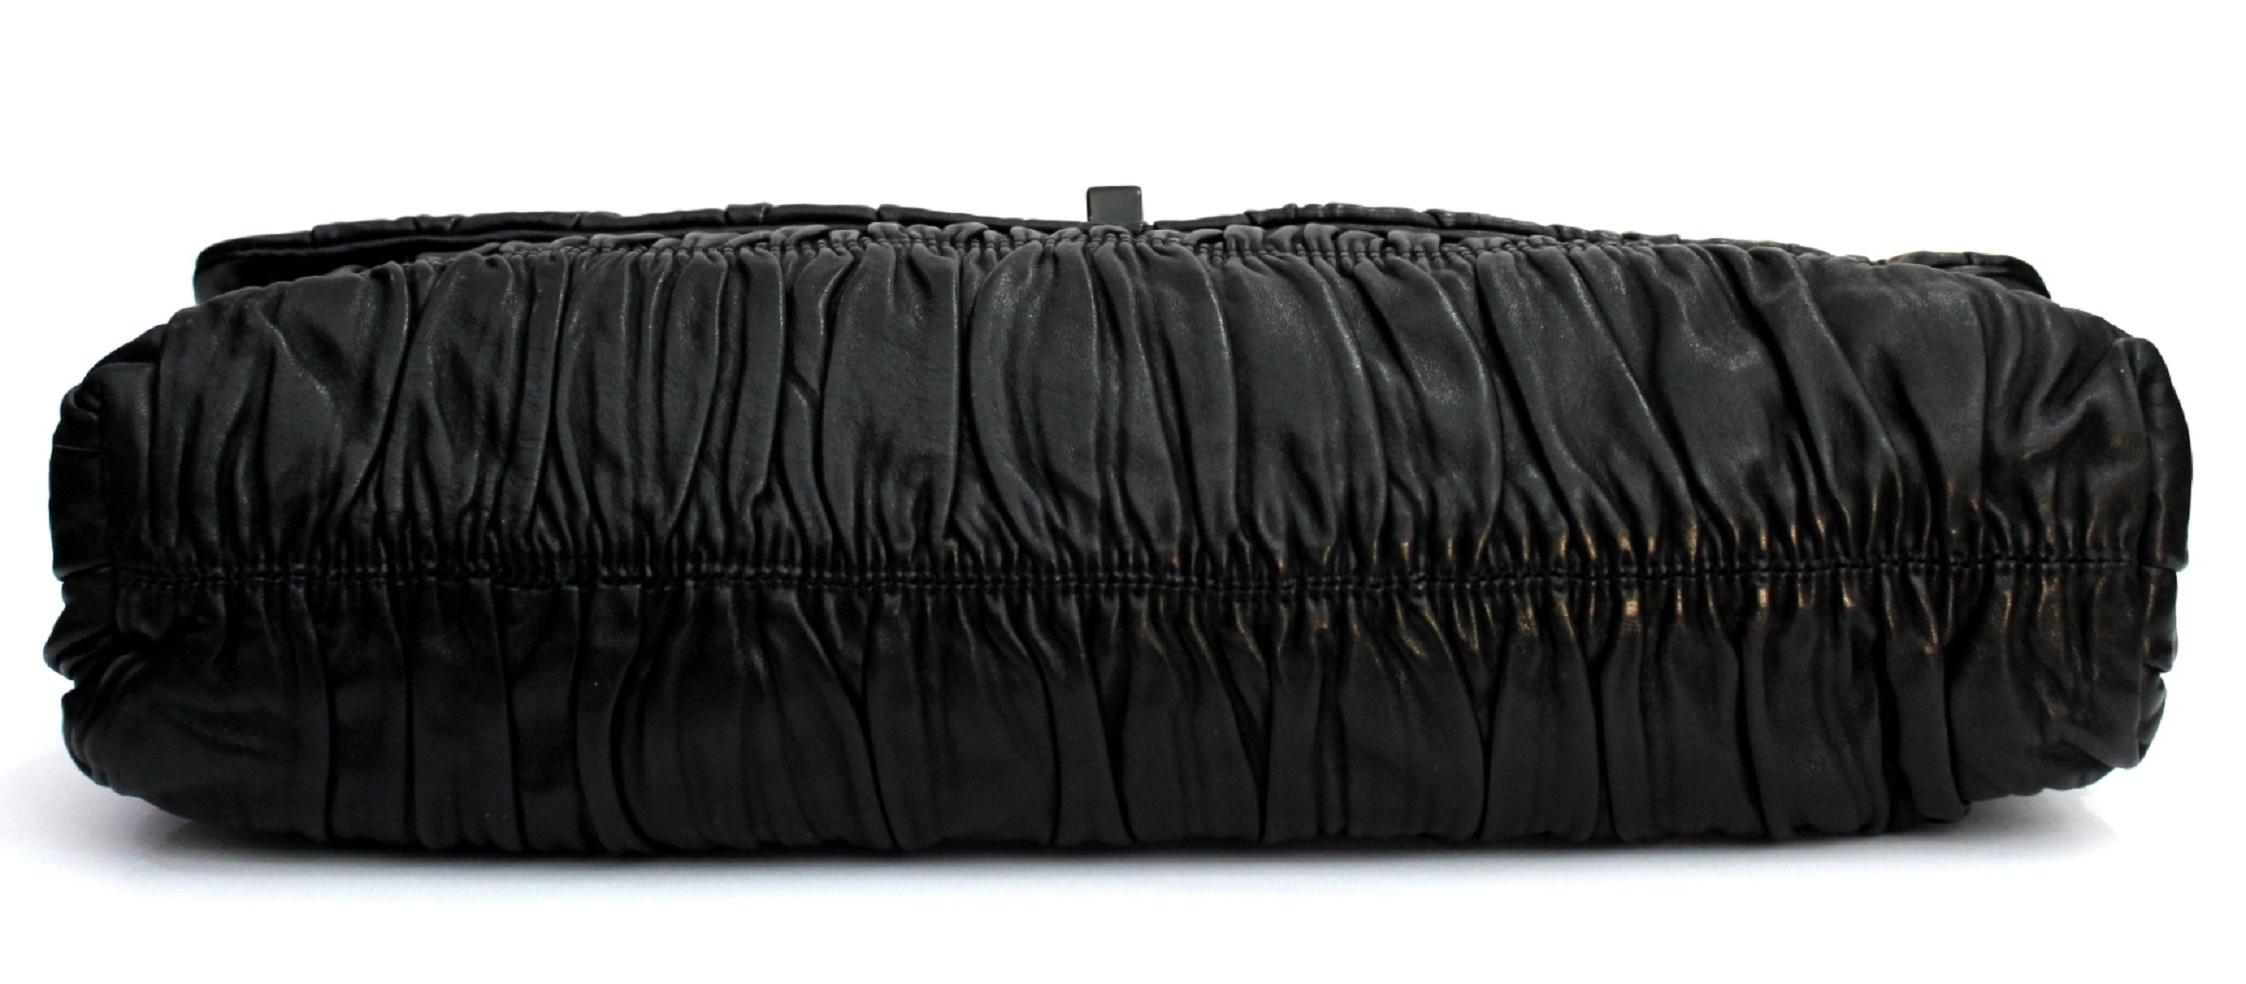 Prada Black Leather Clutch Bag 1